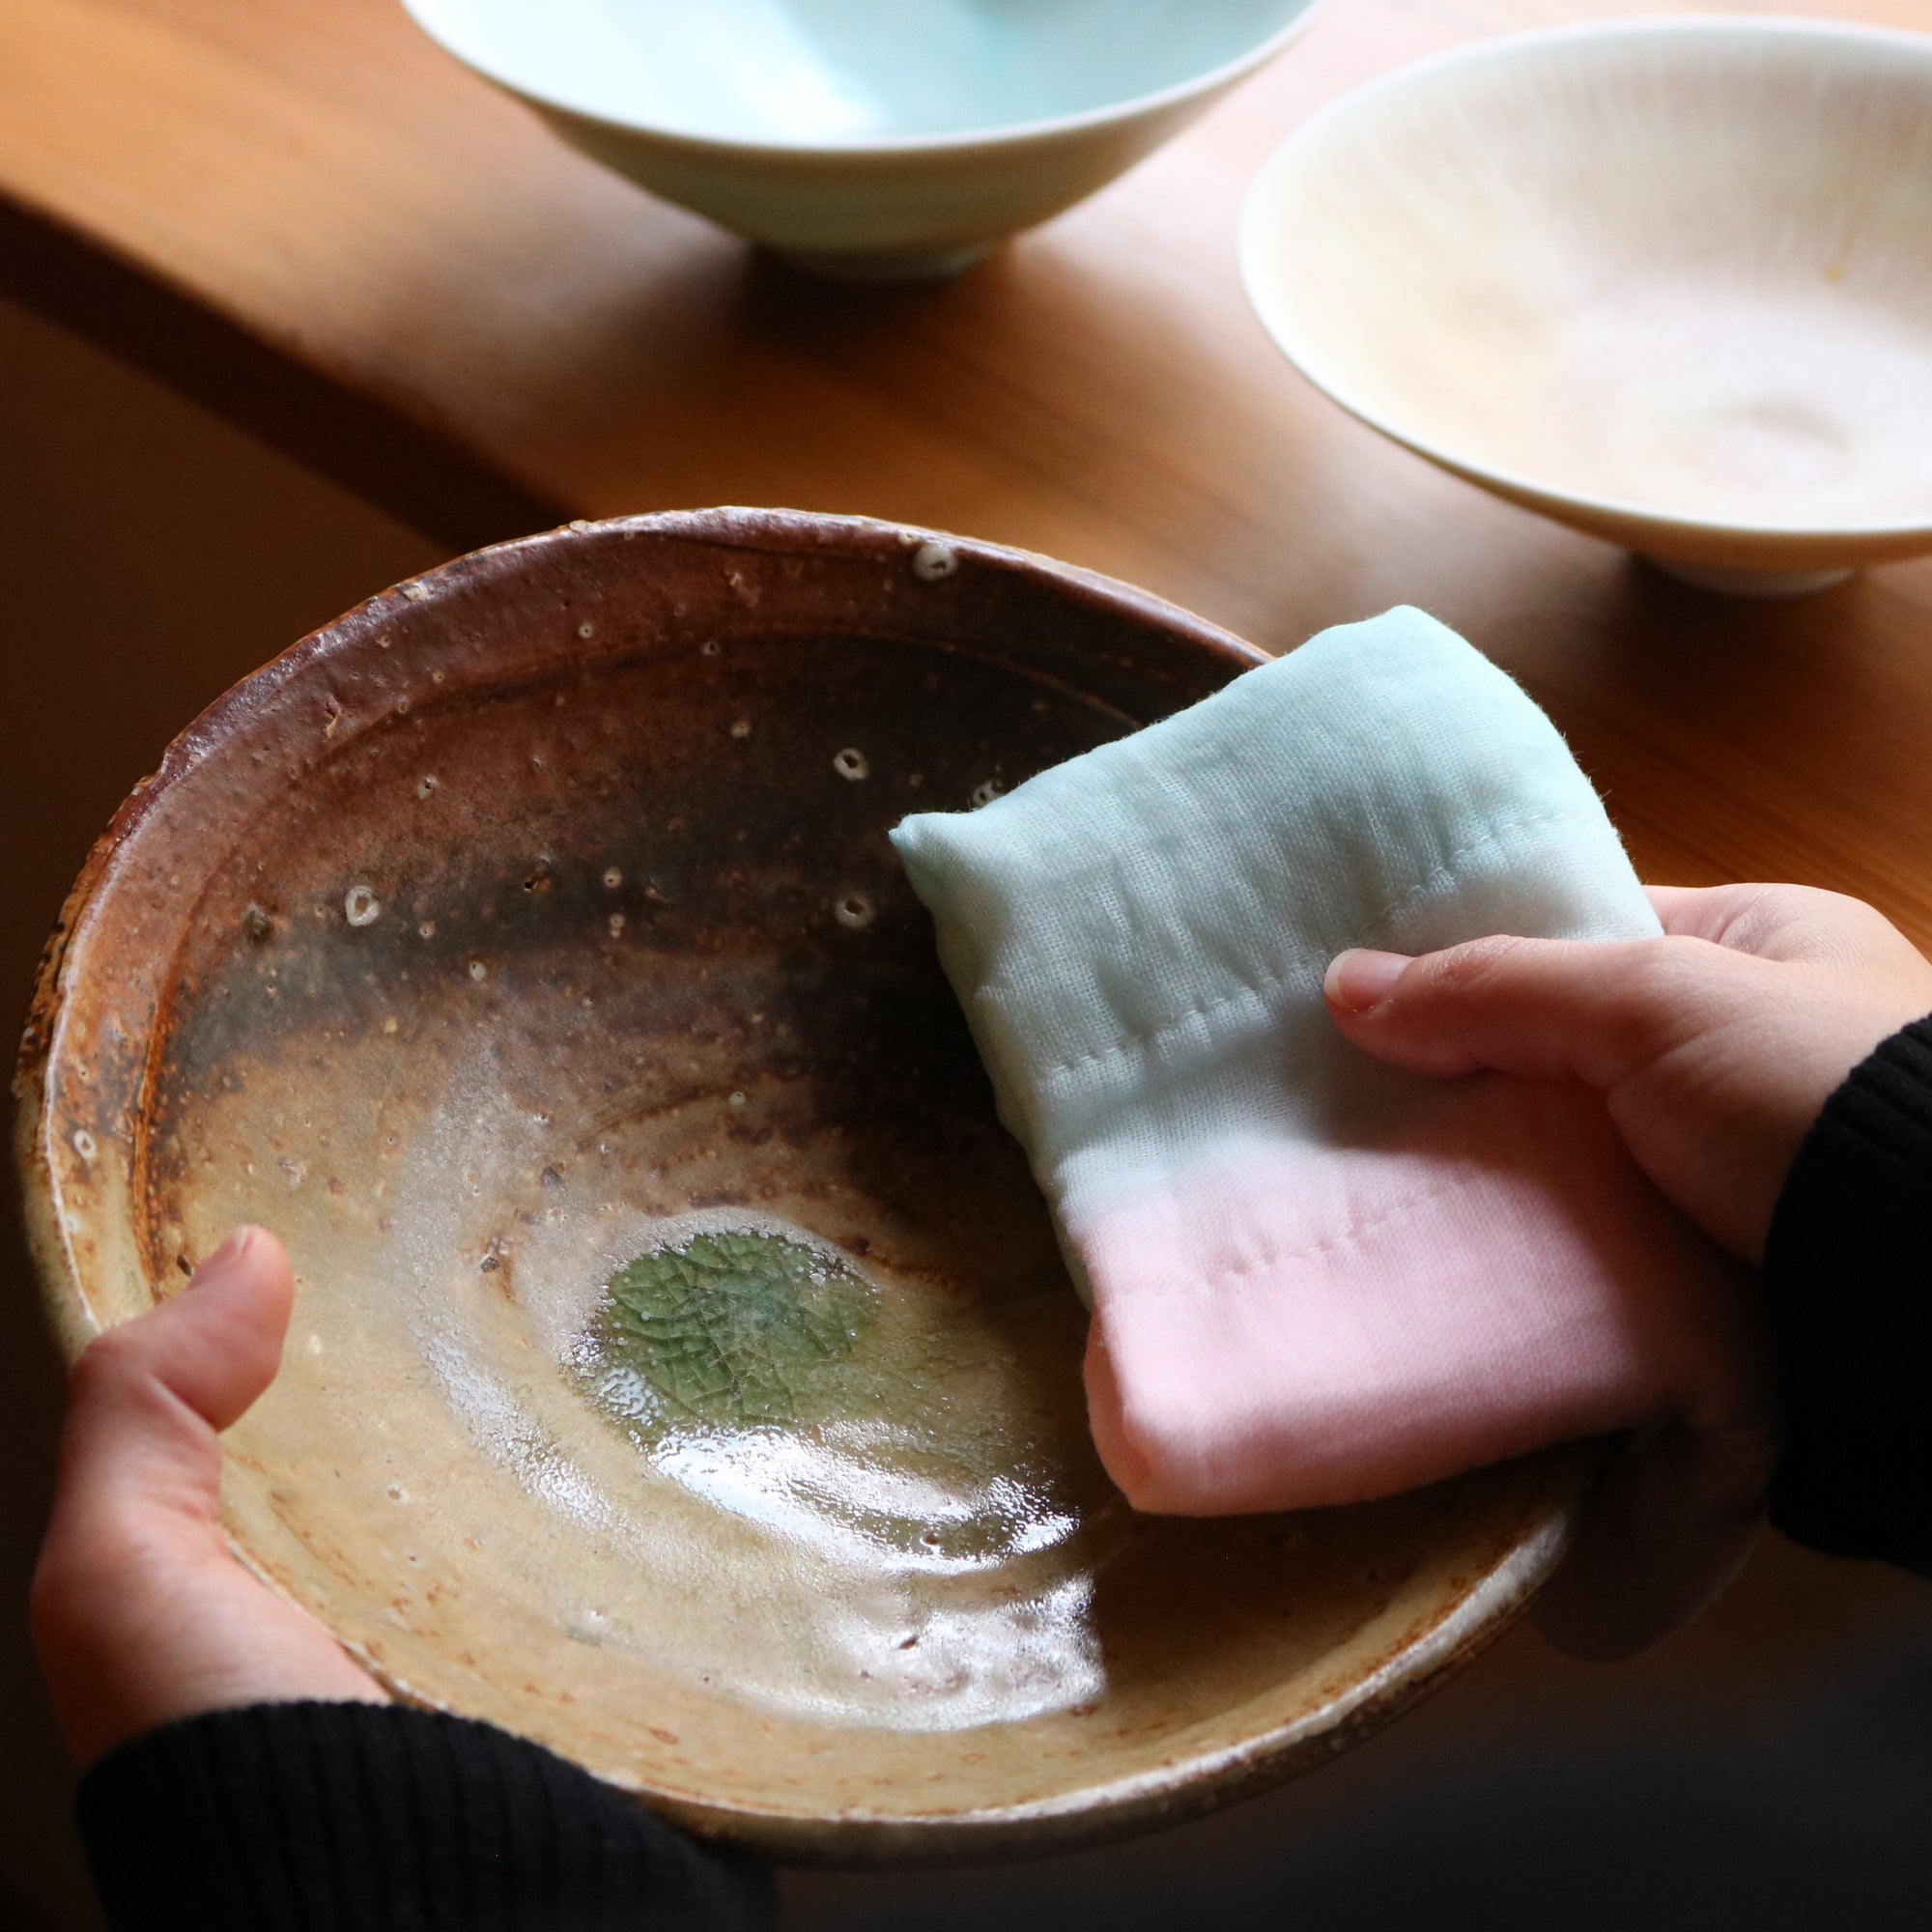 The Organic Shirayuki Japanese Kitchen Cloth Set | Made in Japan